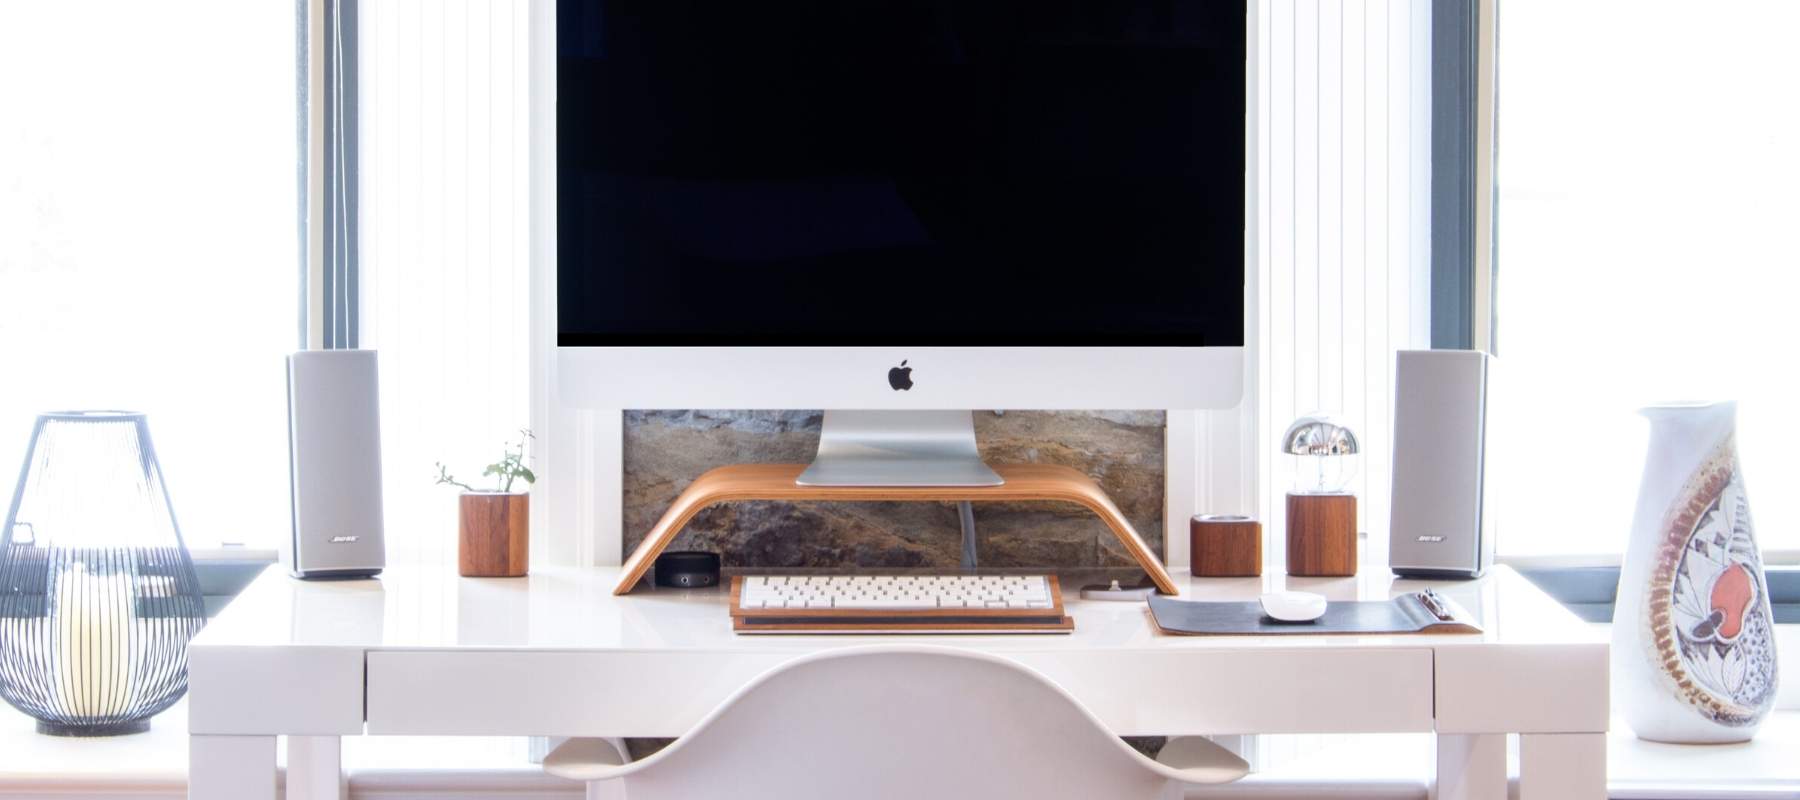 Mac on white desk in front of window